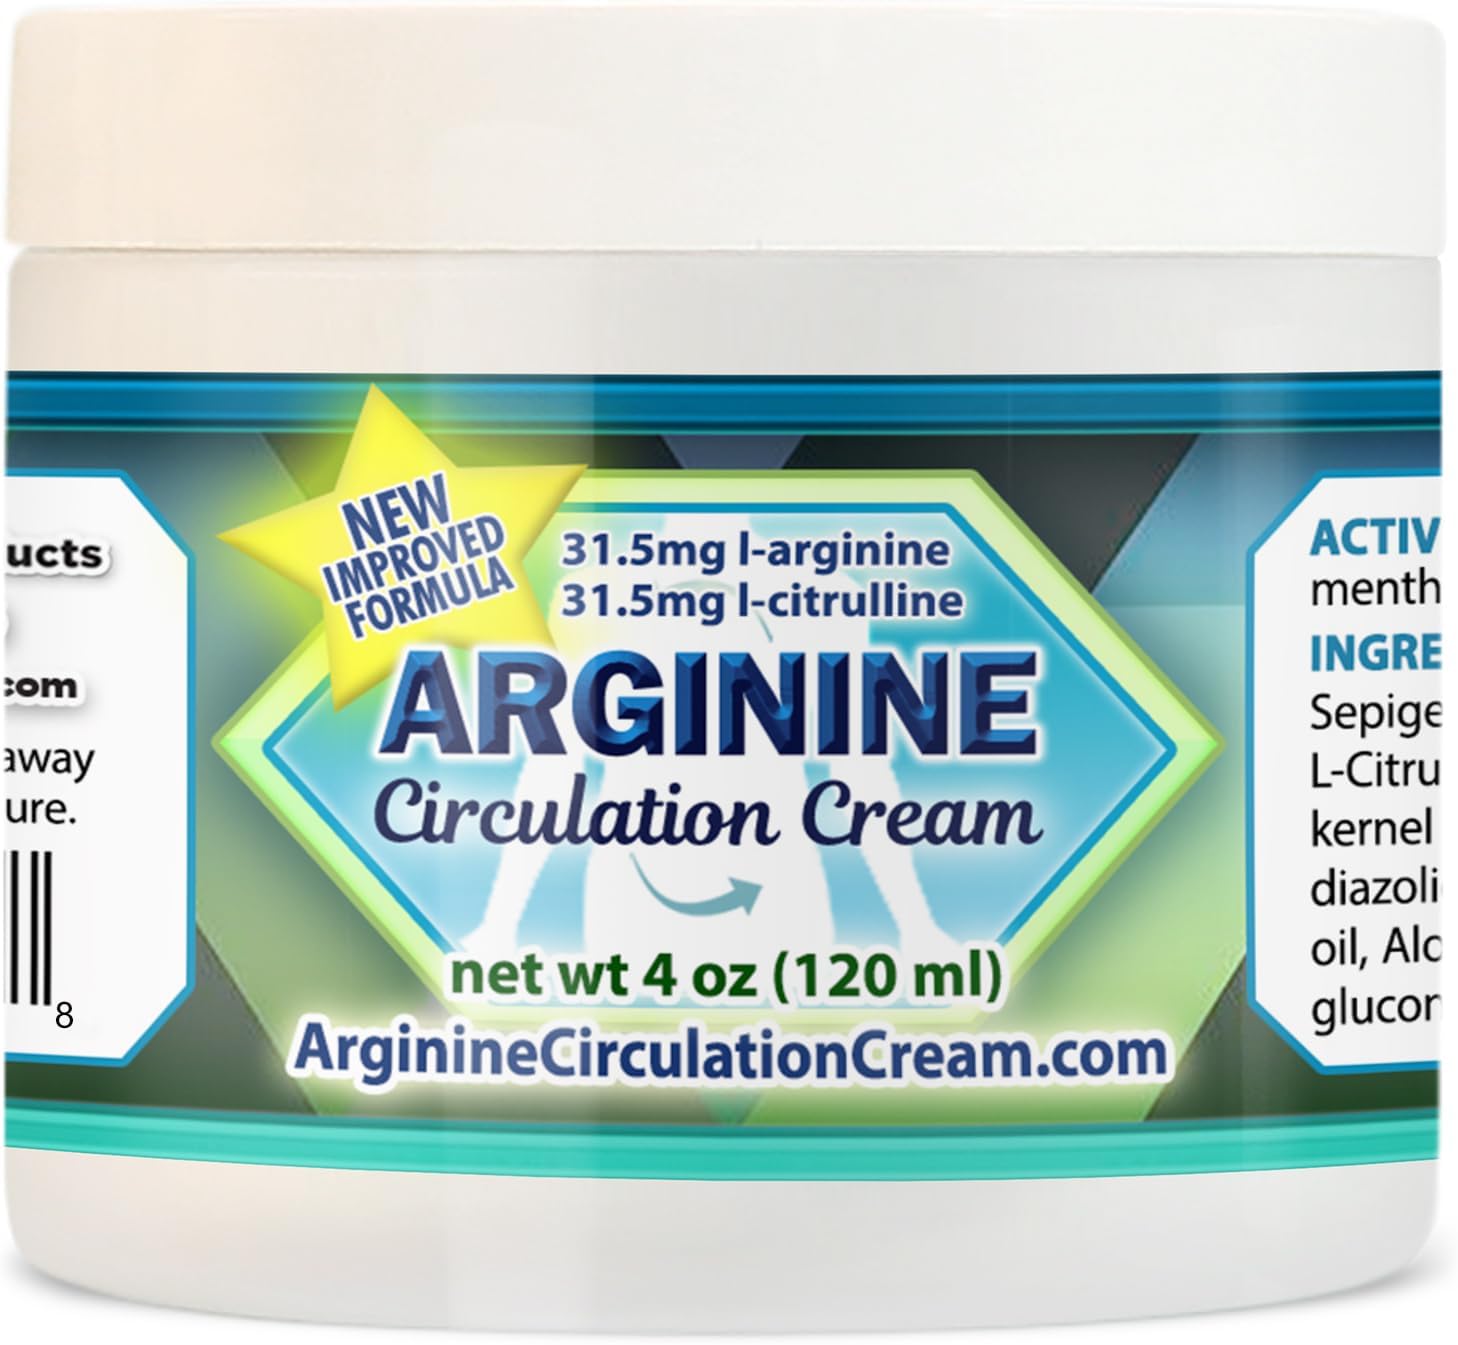 Arginine Circulation Cream 4 ounces - Menthol, L Argini